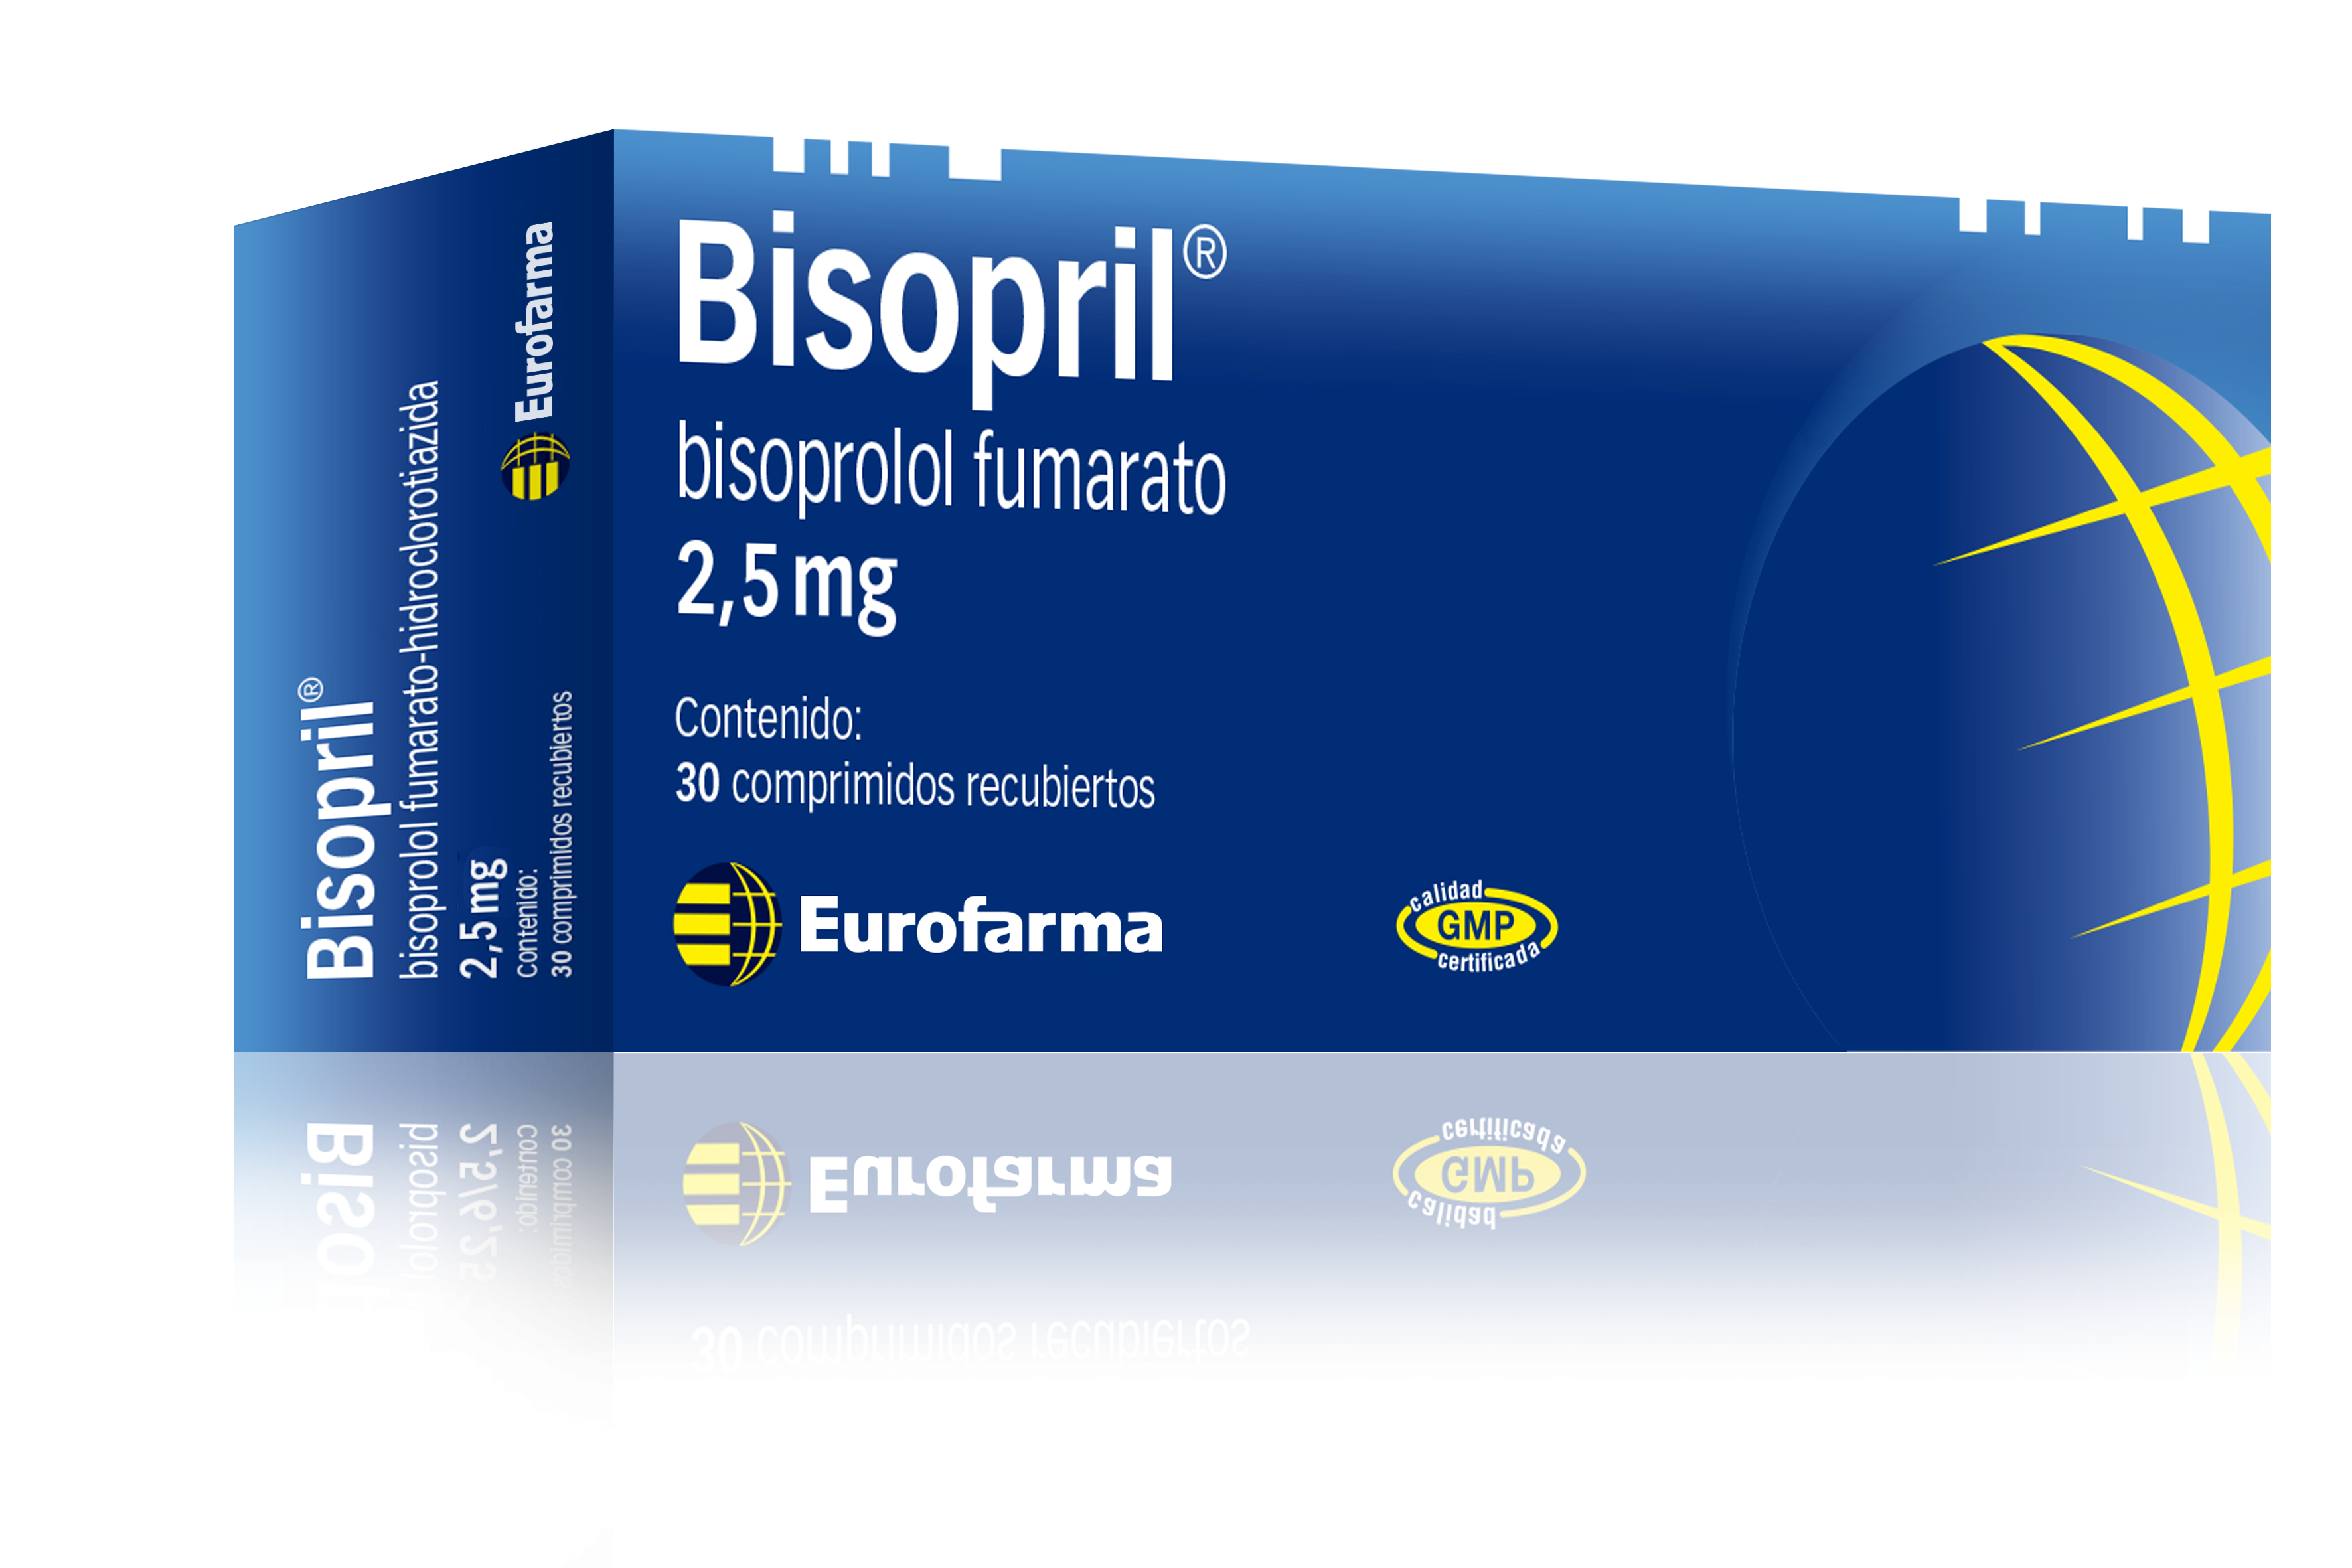 Bisopril 2,5 mg.